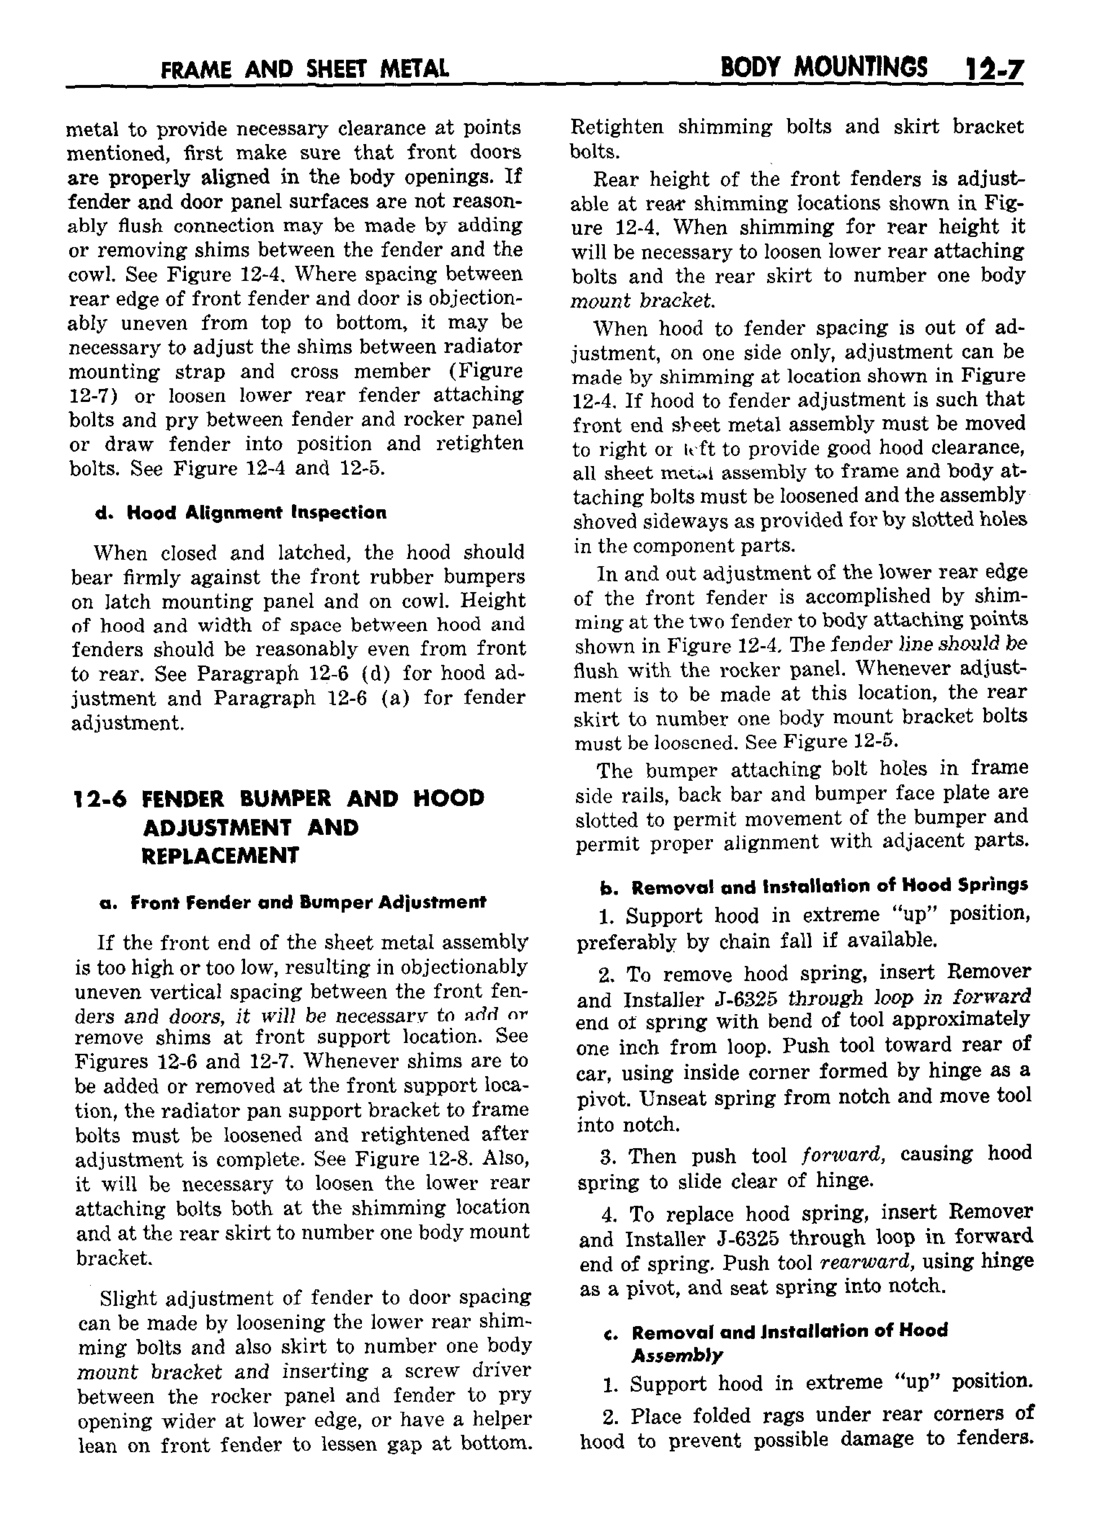 n_13 1959 Buick Shop Manual - Frame & Sheet Metal-007-007.jpg